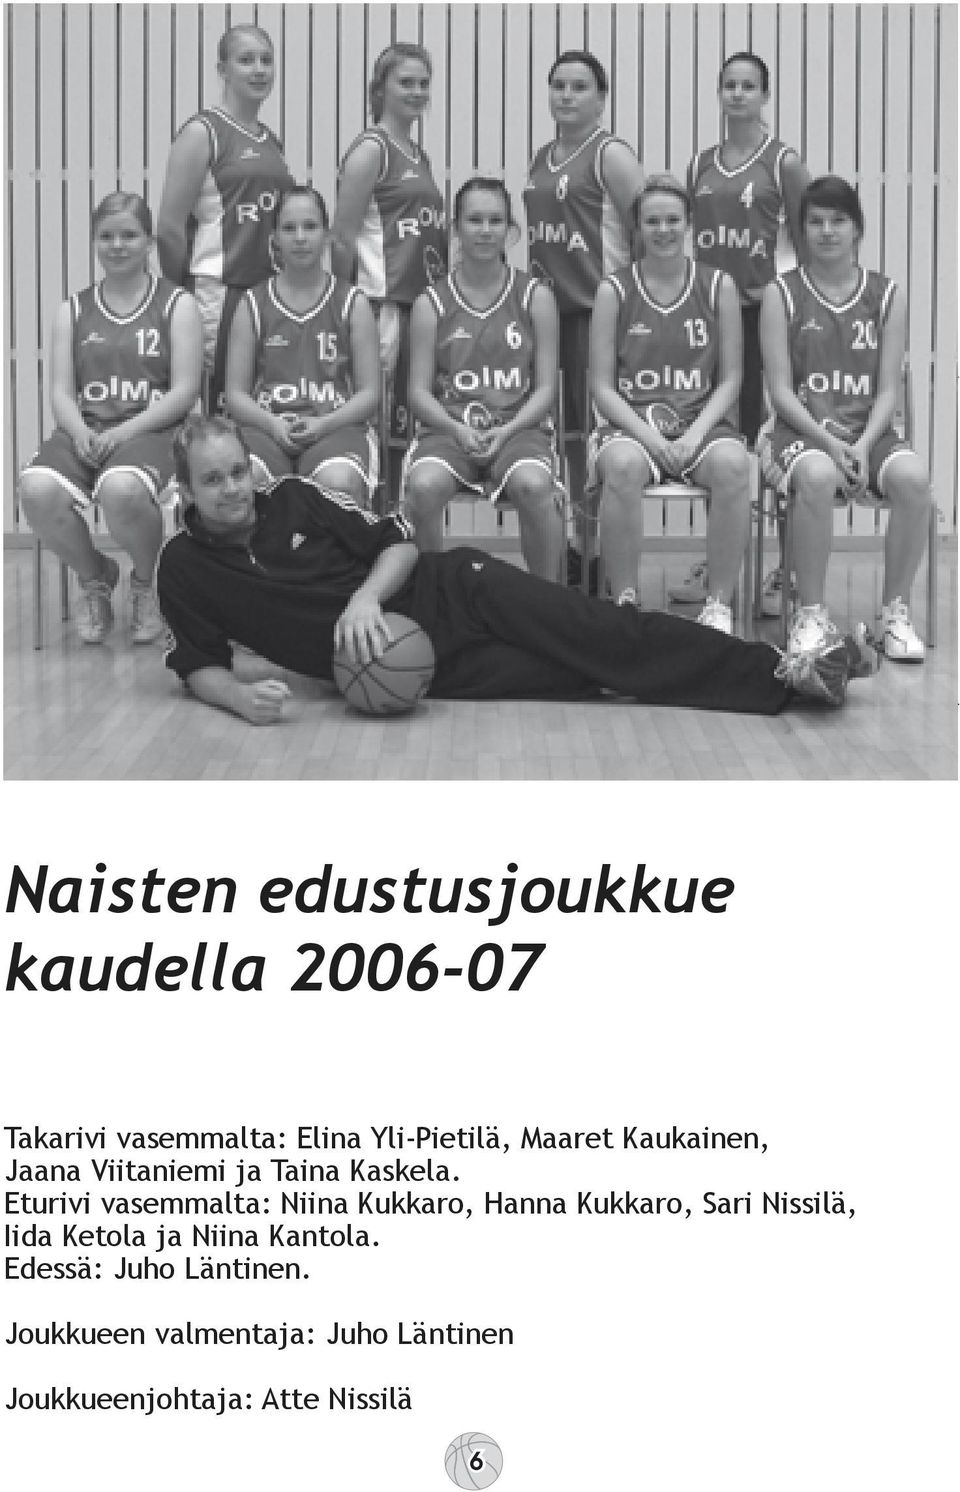 Eturivi vasemmalta: Niina Kukkaro, Hanna Kukkaro, Sari Nissilä, Iida Ketola ja